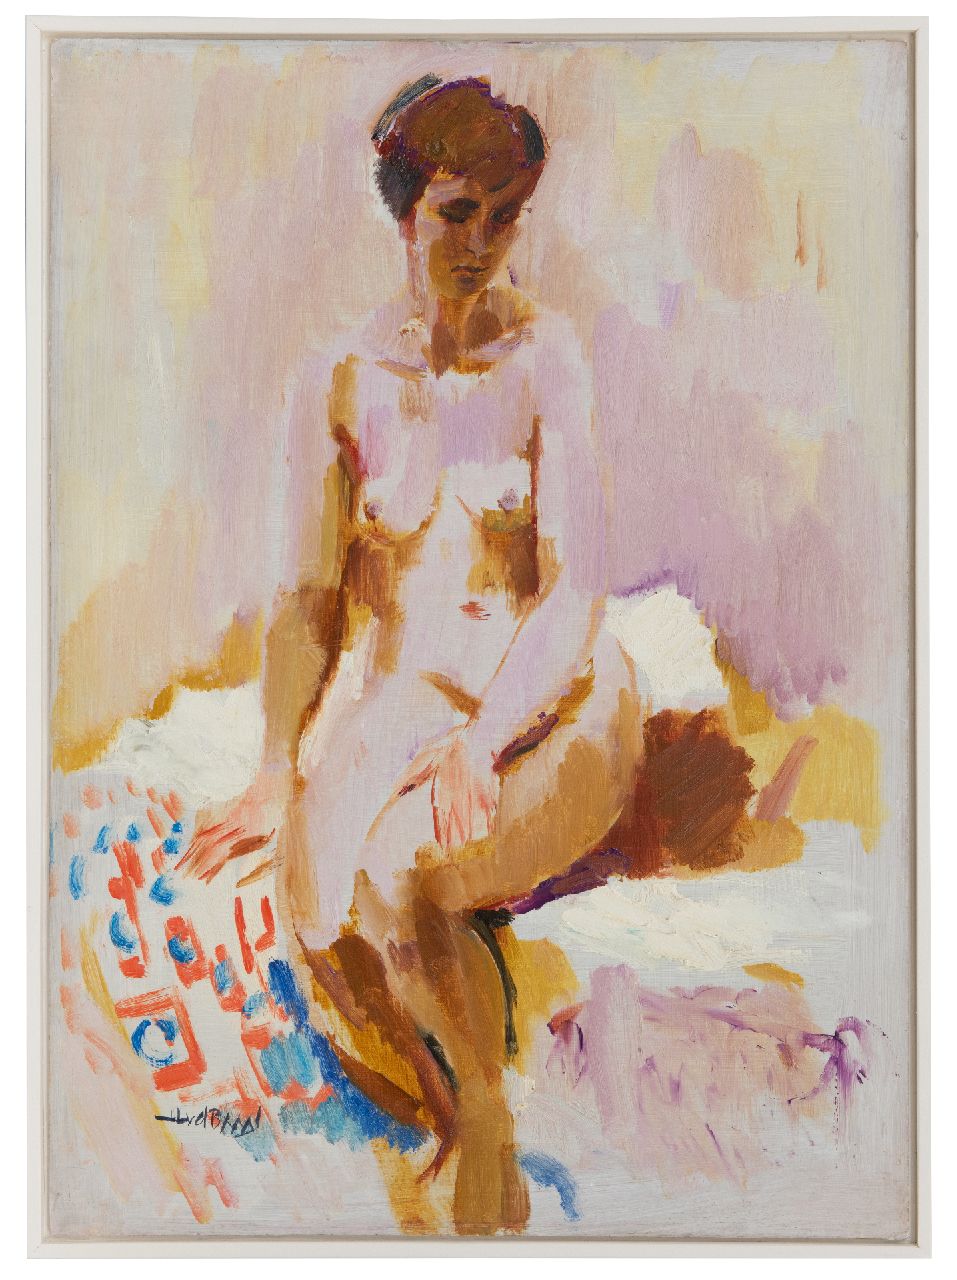 Baan J.L. van der | 'Jan' Lucas van der Baan | Paintings offered for sale | Seated nude, oil on board 70.1 x 50.1 cm, signed l.l.